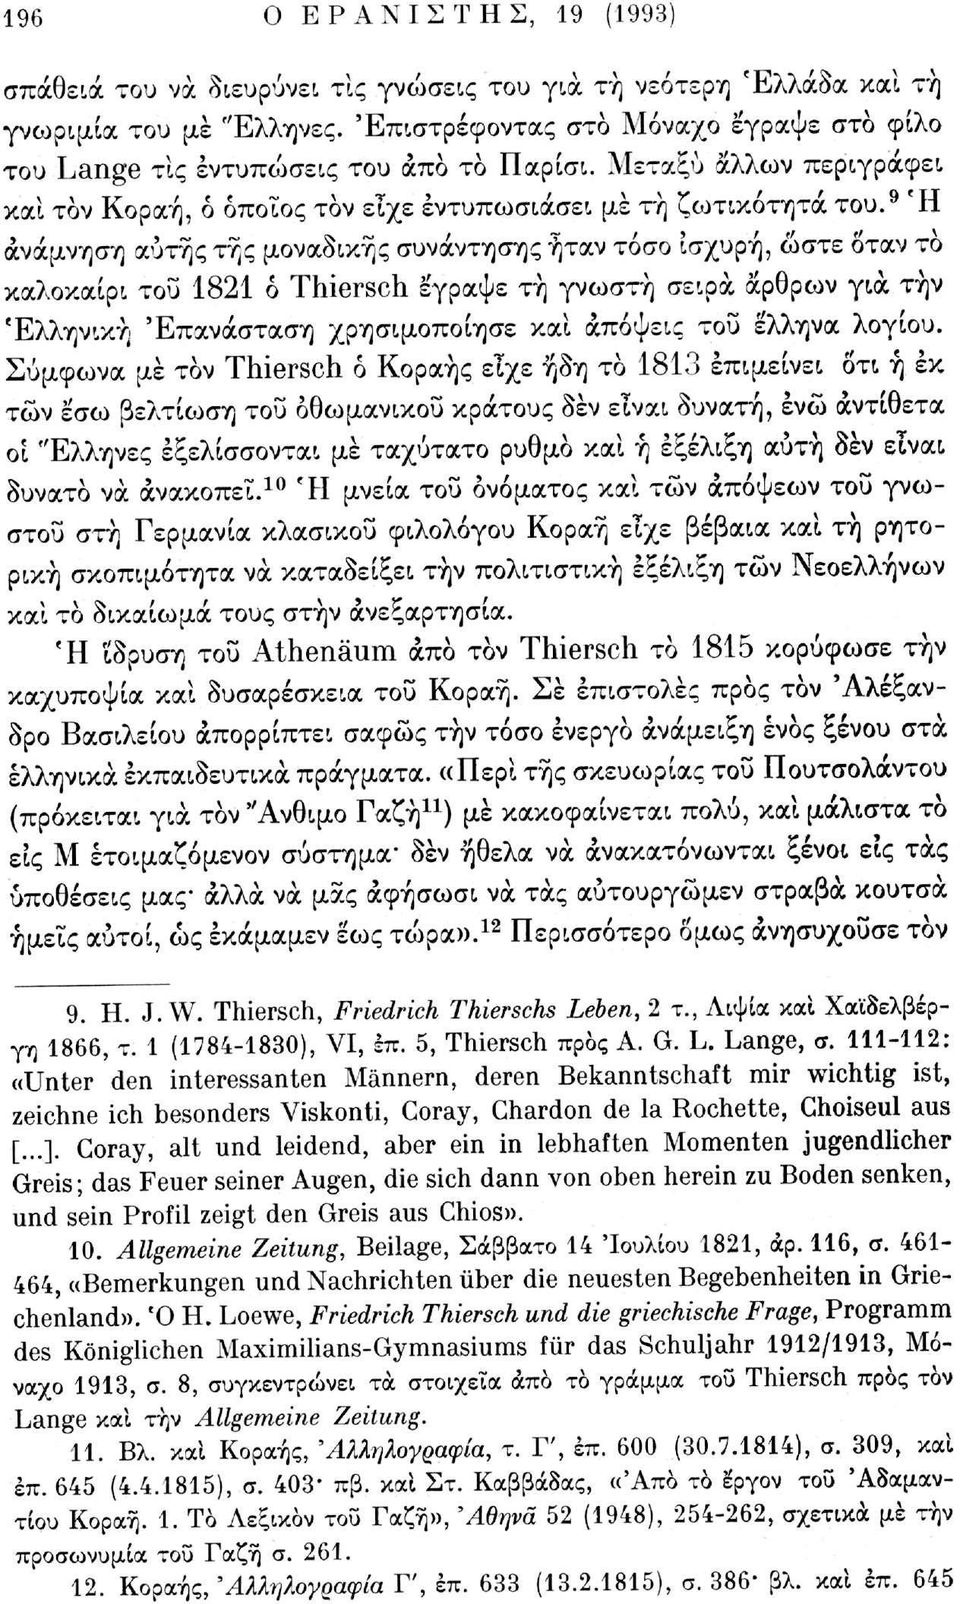 9 Ή ανάμνηση αυτής της μοναδικής συνάντησης ήταν τόσο ισχυρή, ώστε όταν το καλοκαίρι του 1821 ό Thiersch έγραψε τη γνωστή σειρά άρθρων για την Ελληνική 'Επανάσταση χρησιμοποίησε και απόψεις του